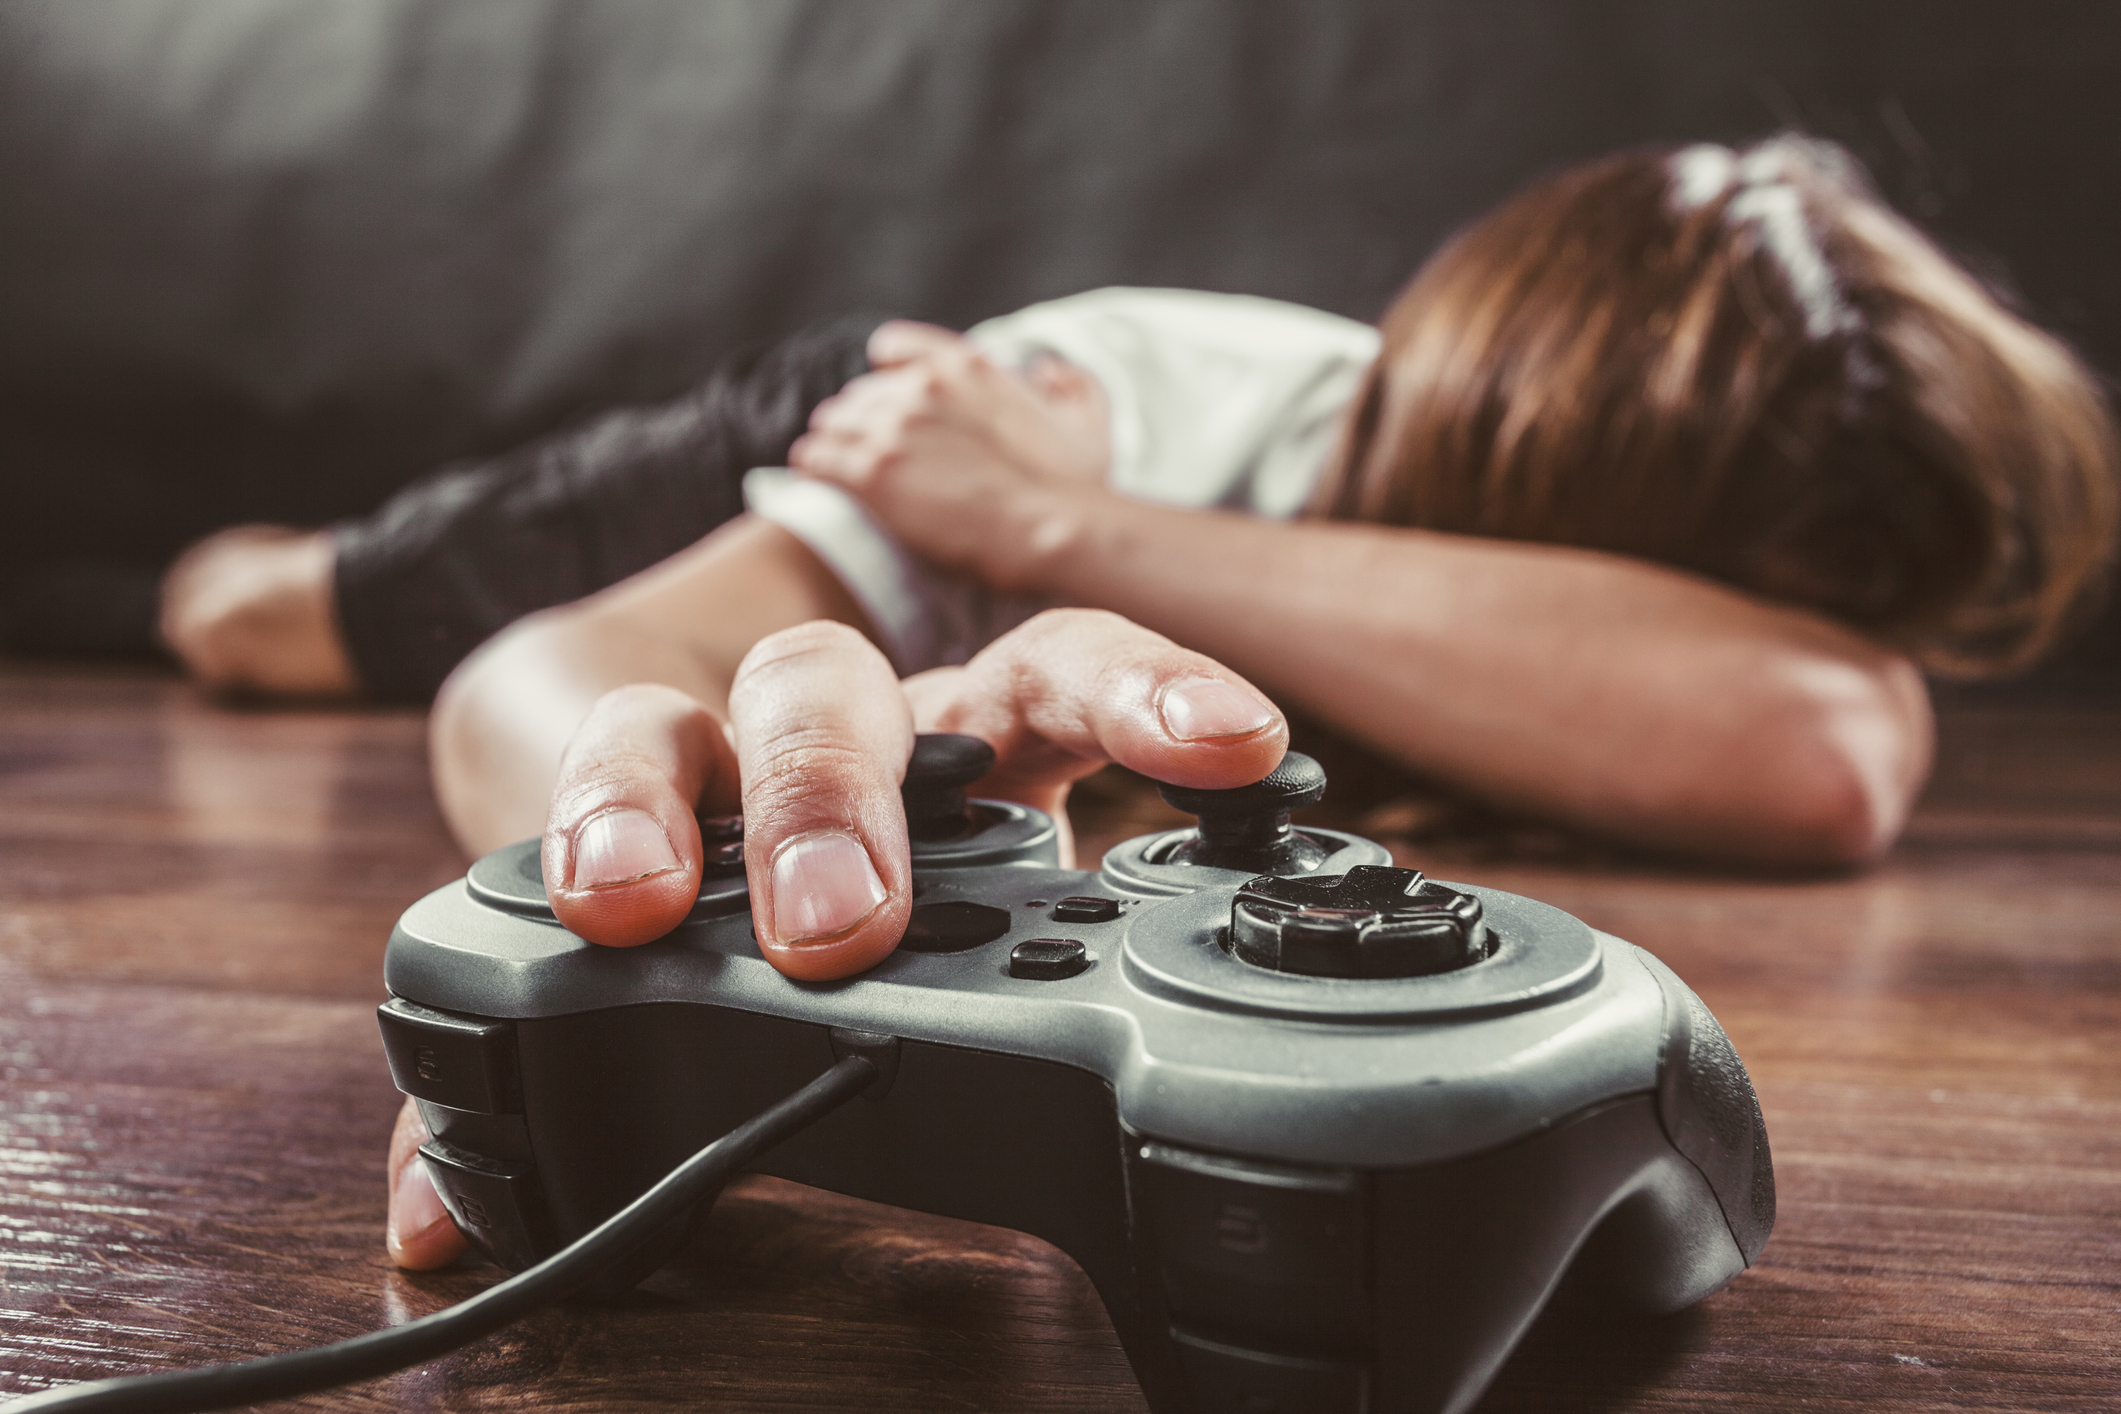 OMS identifica transtorno de jogos pela internet como doença